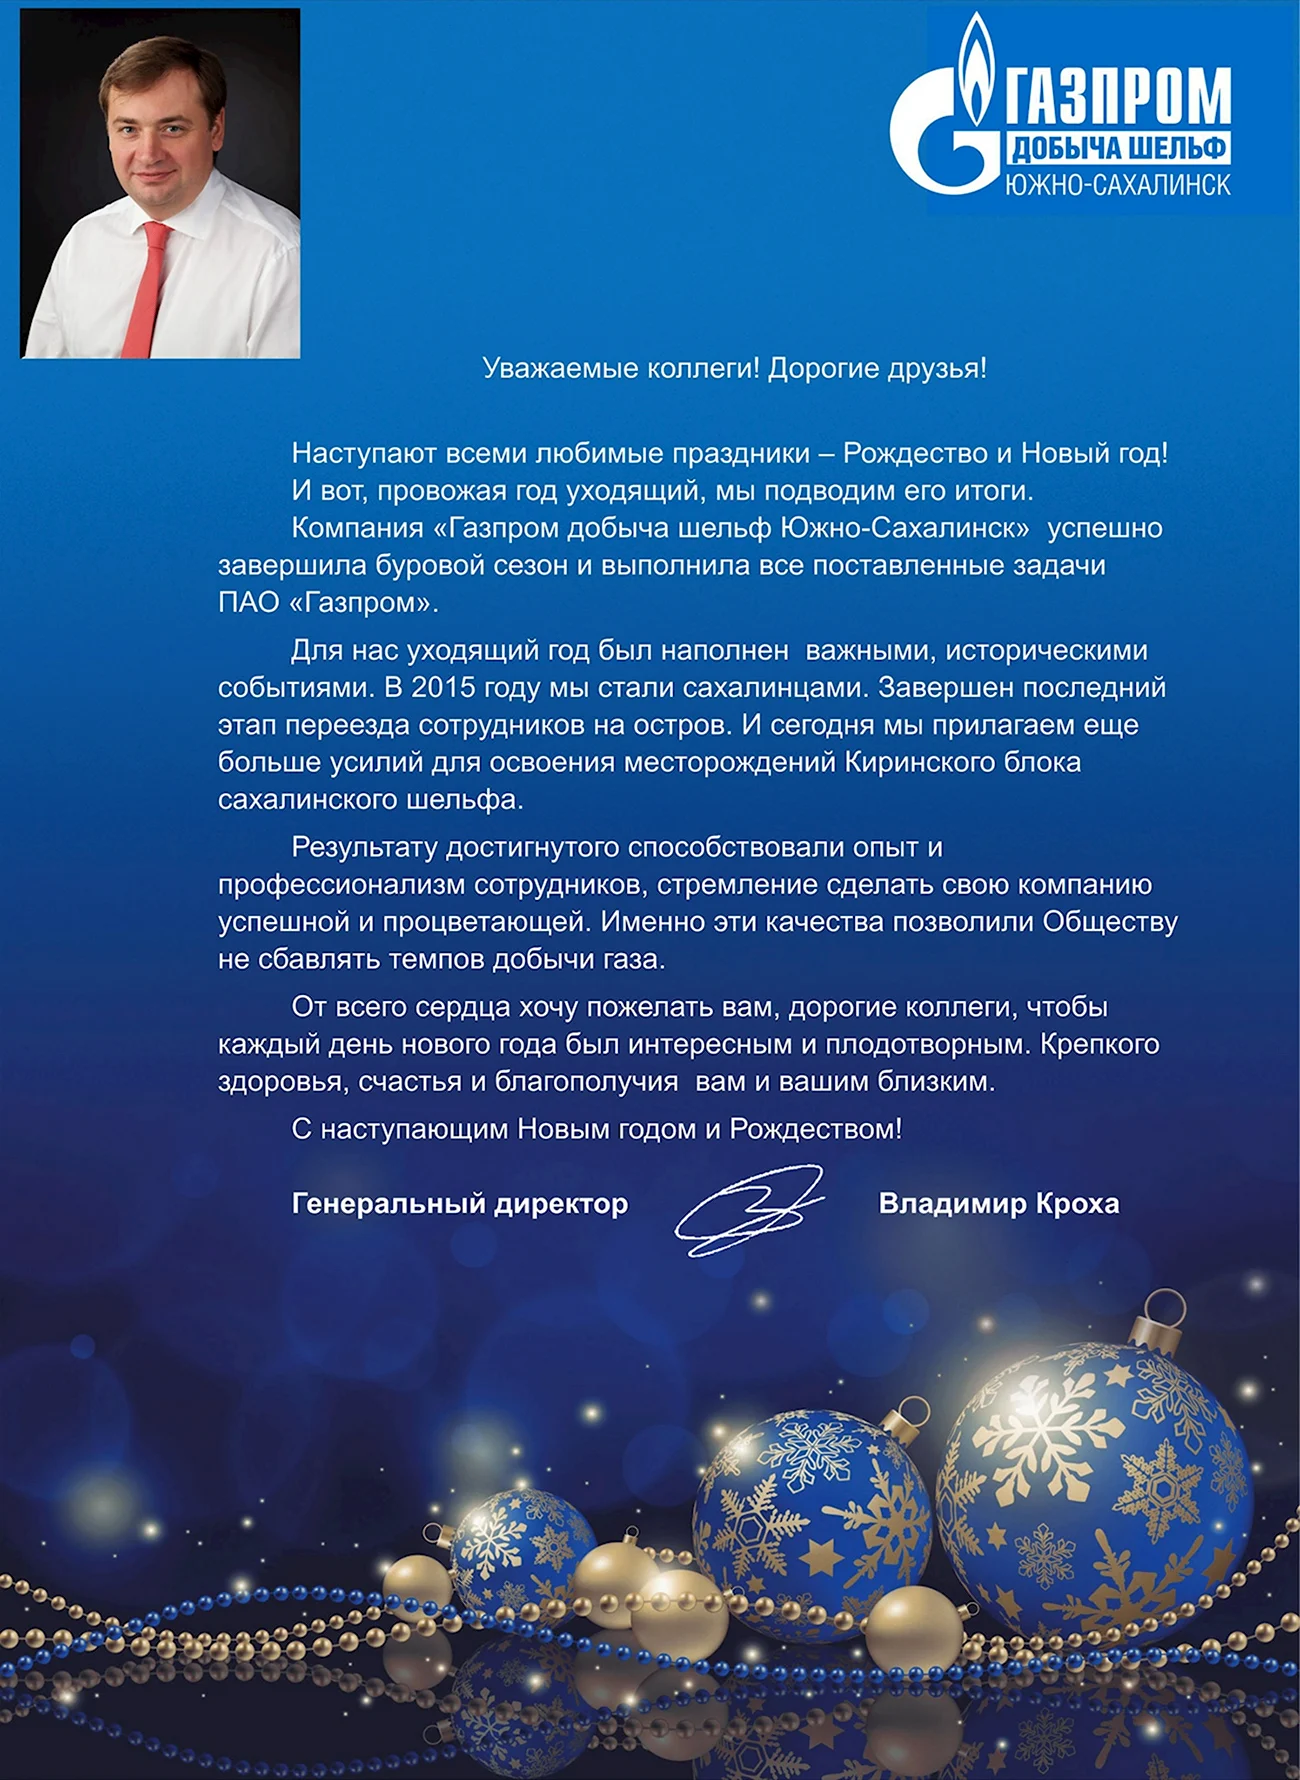 Поздравление с новым годом Газпром. Поздравление